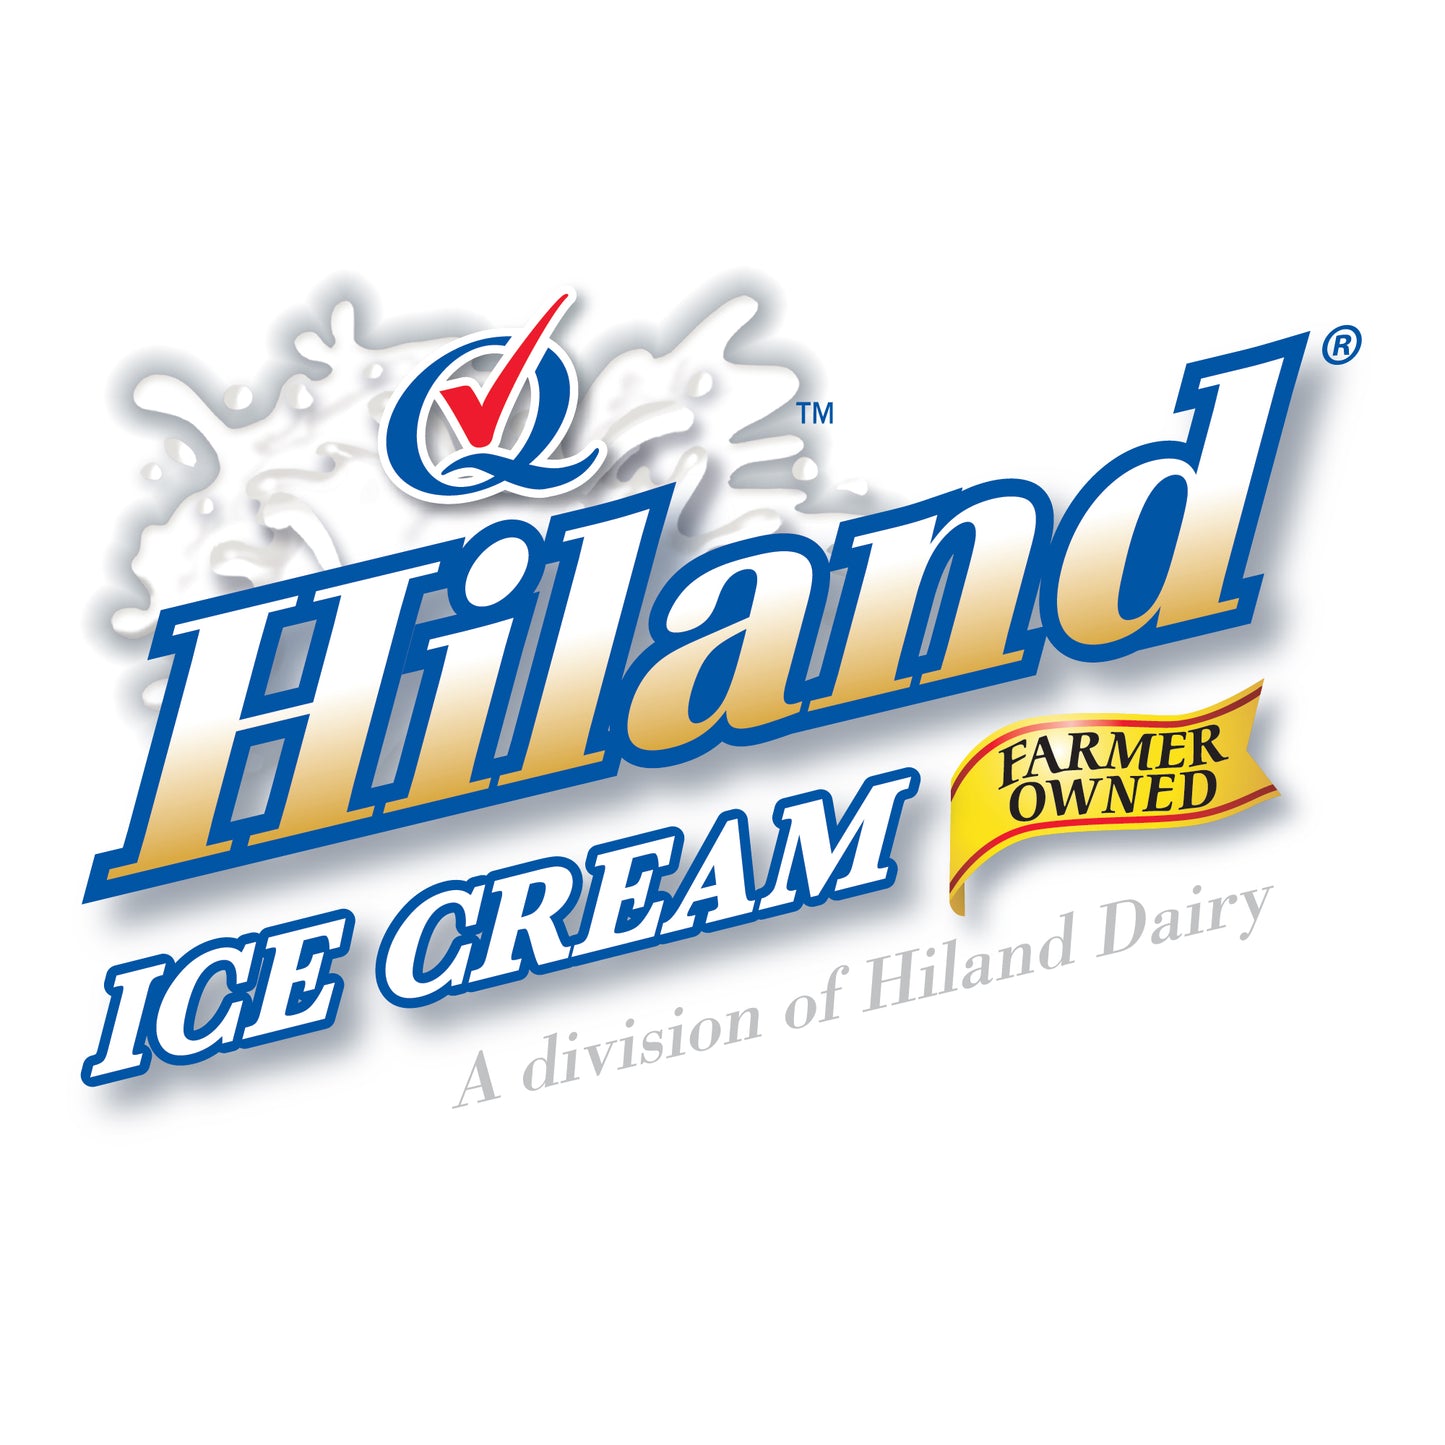 Hiland Premium Ice Cream